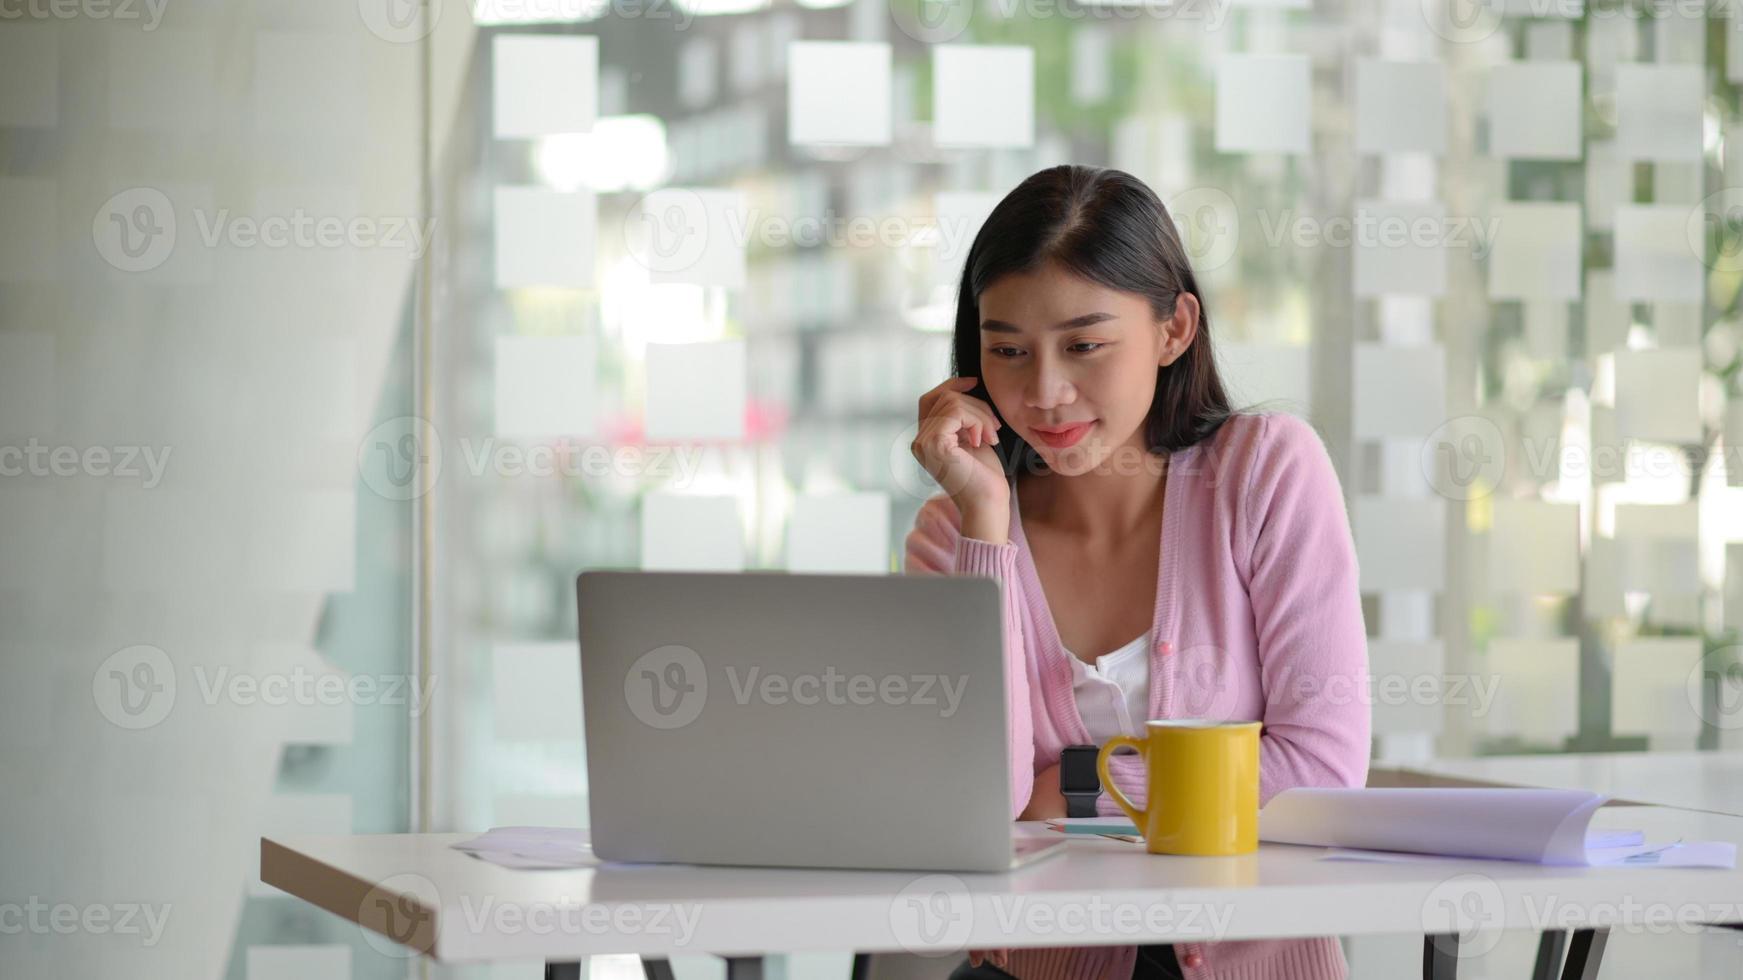 jonge vrouwelijke ondernemers richten zich op het werken met een laptopcomputer op een wit bureau in een modern kantoor. foto